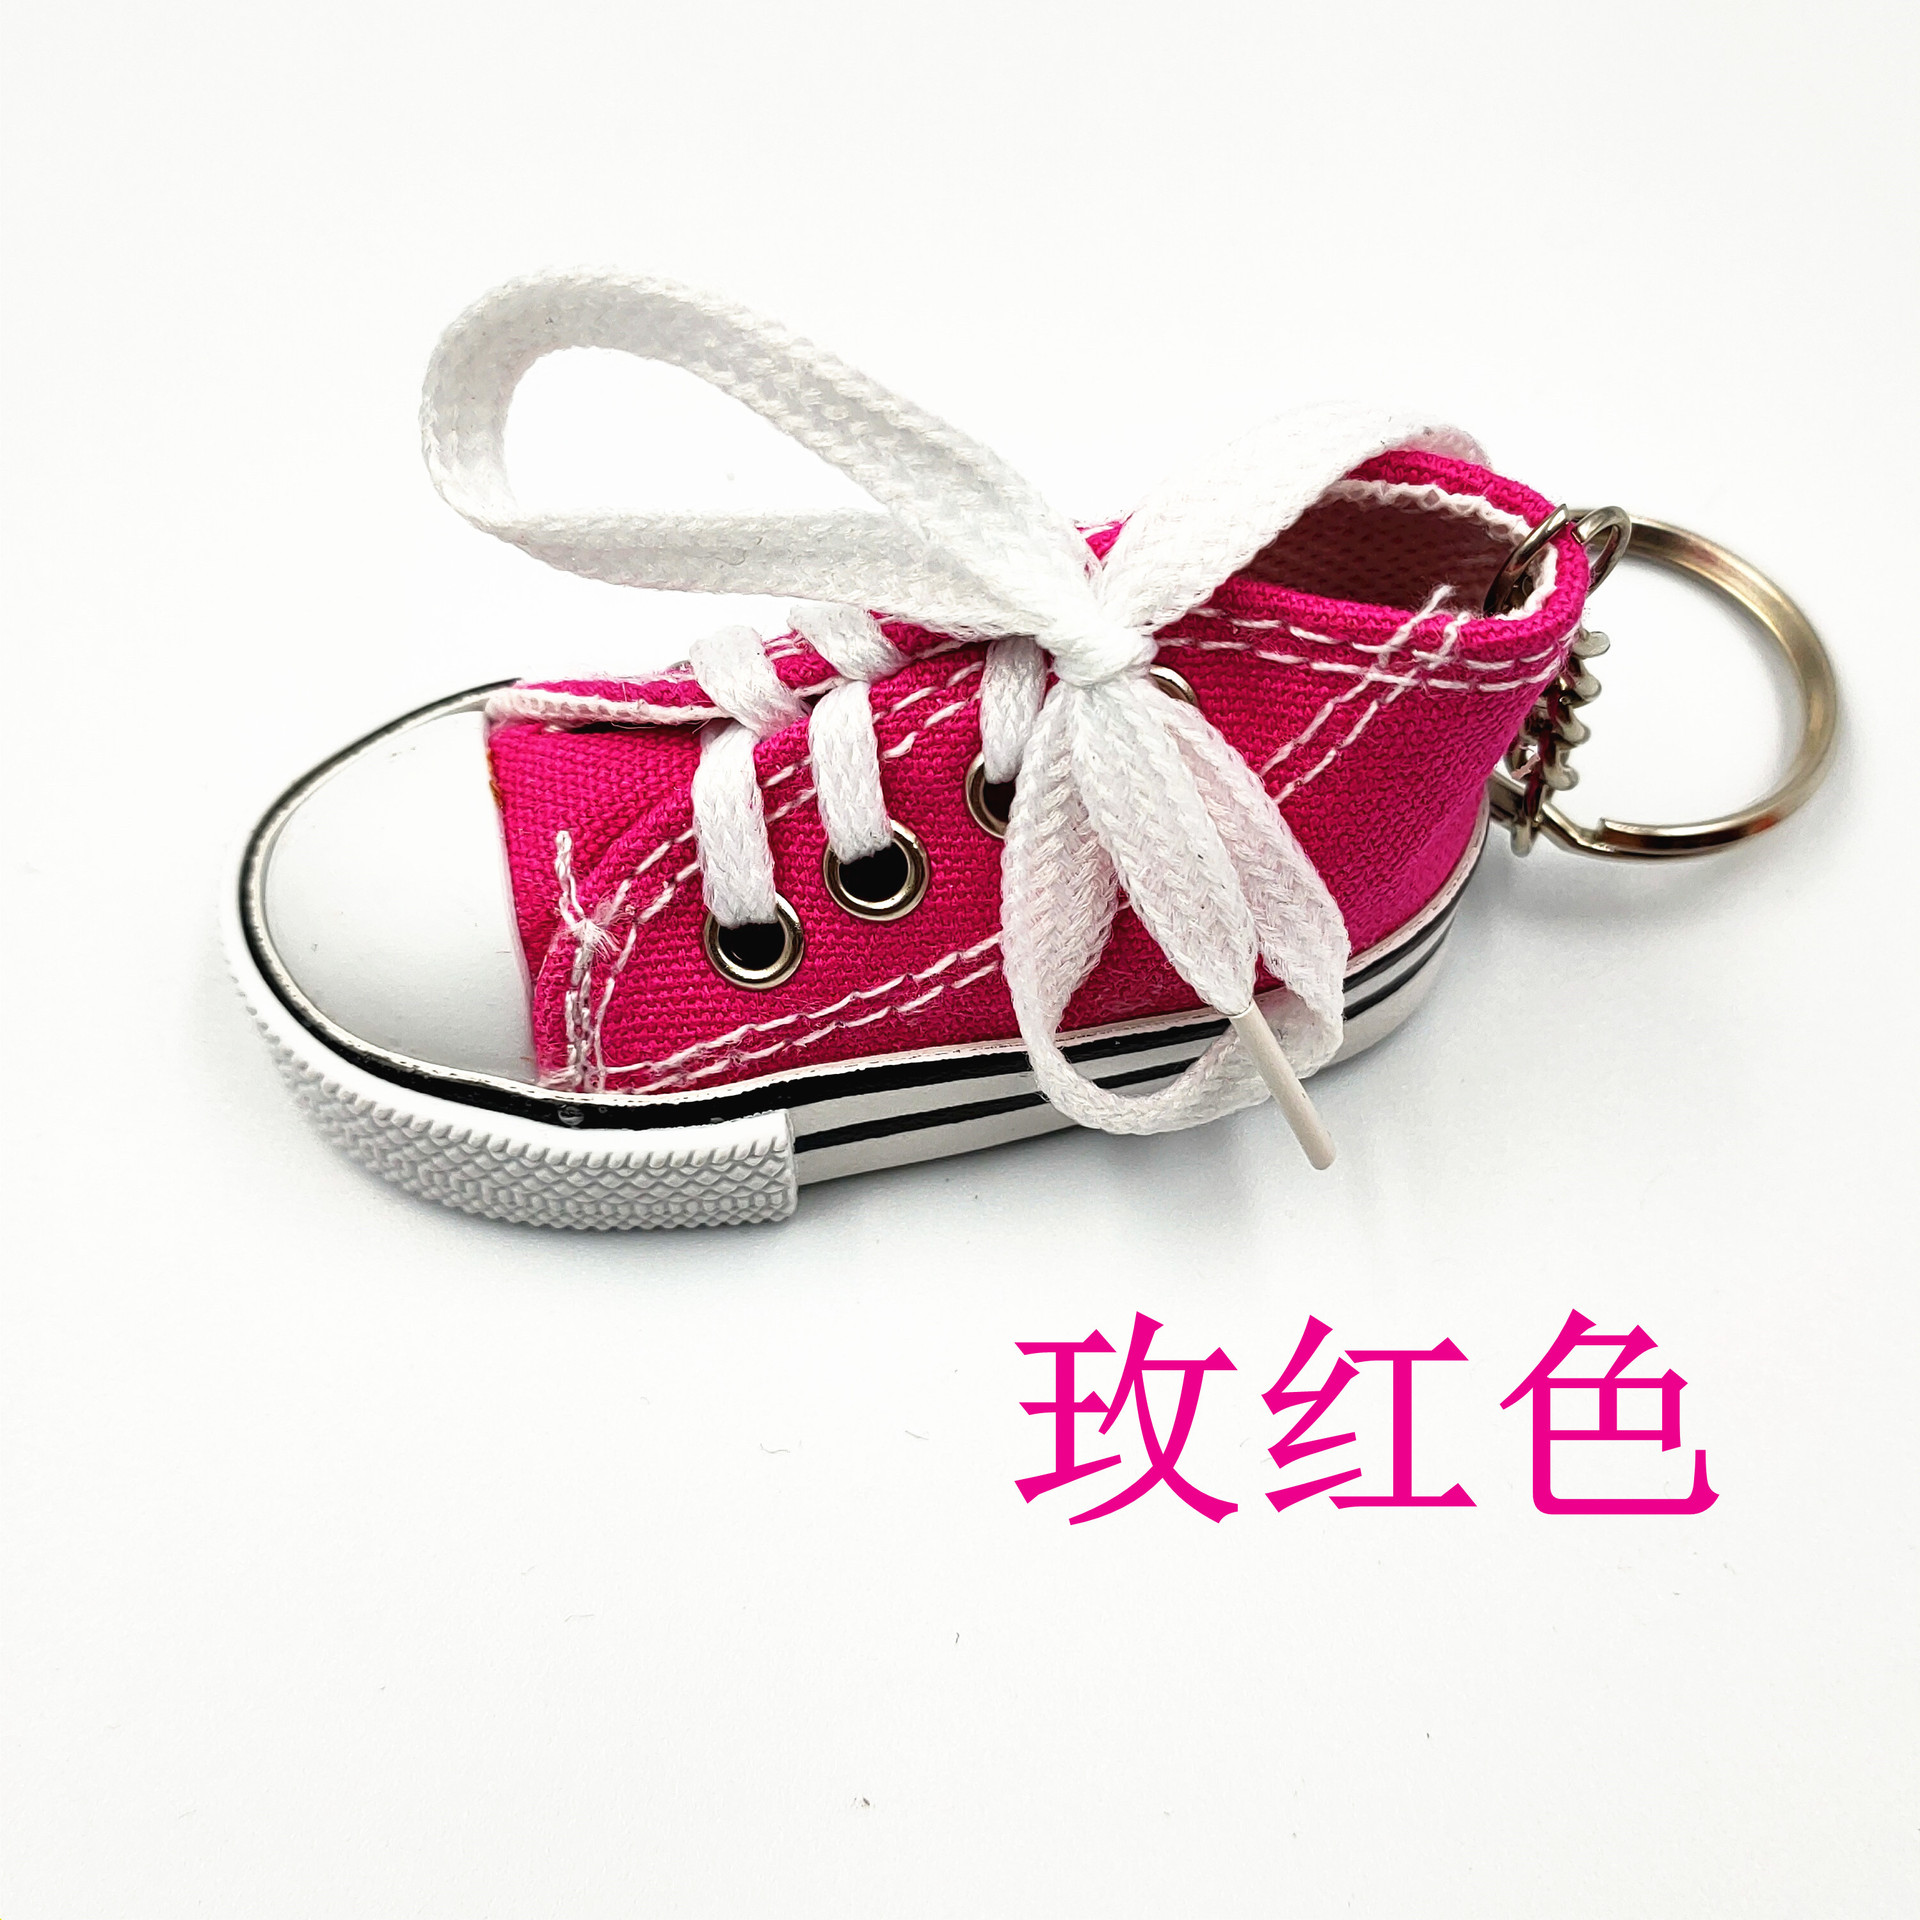 布帆鞋IMG_8718 (1)